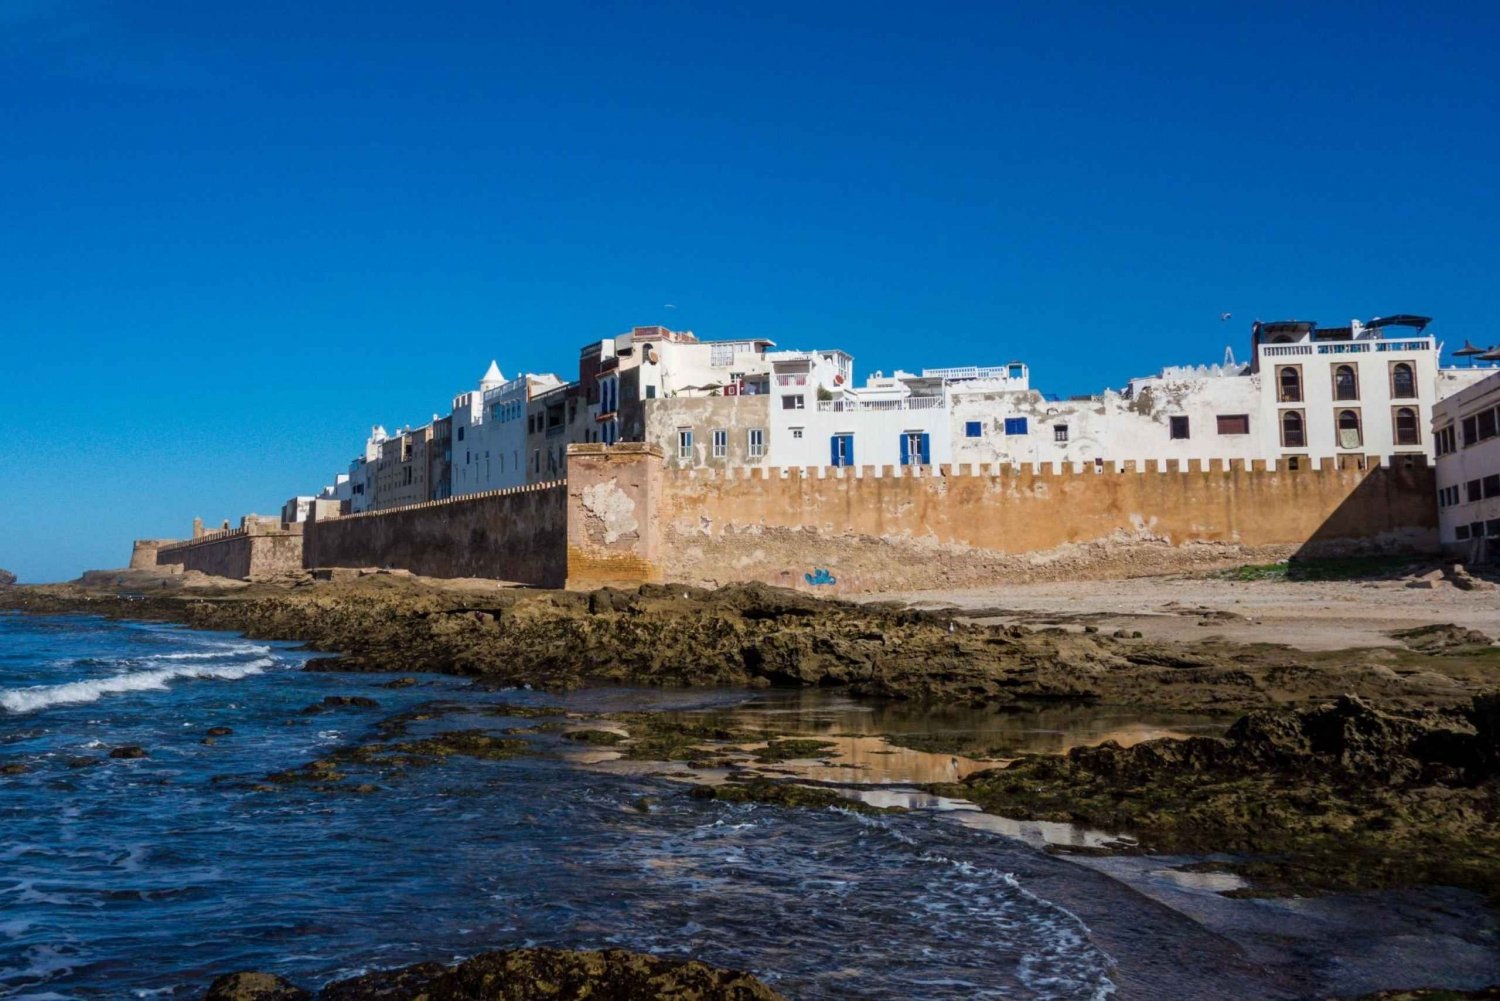 Desvelado: Escapada de un día completo a Essaouira desde Marrakech